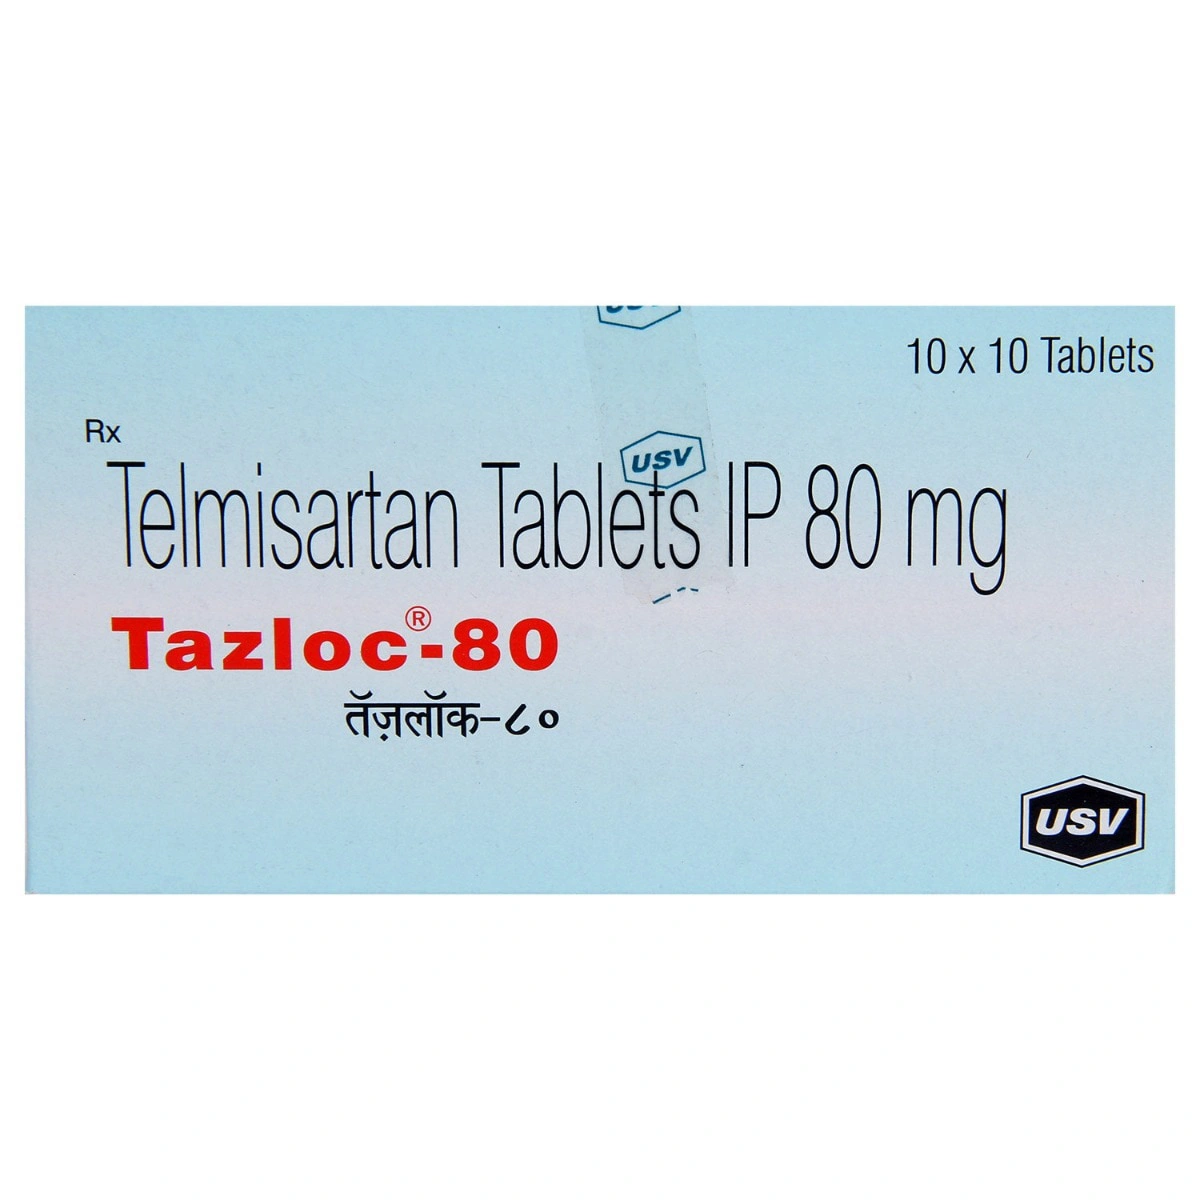 Tazloc 80 Tablet